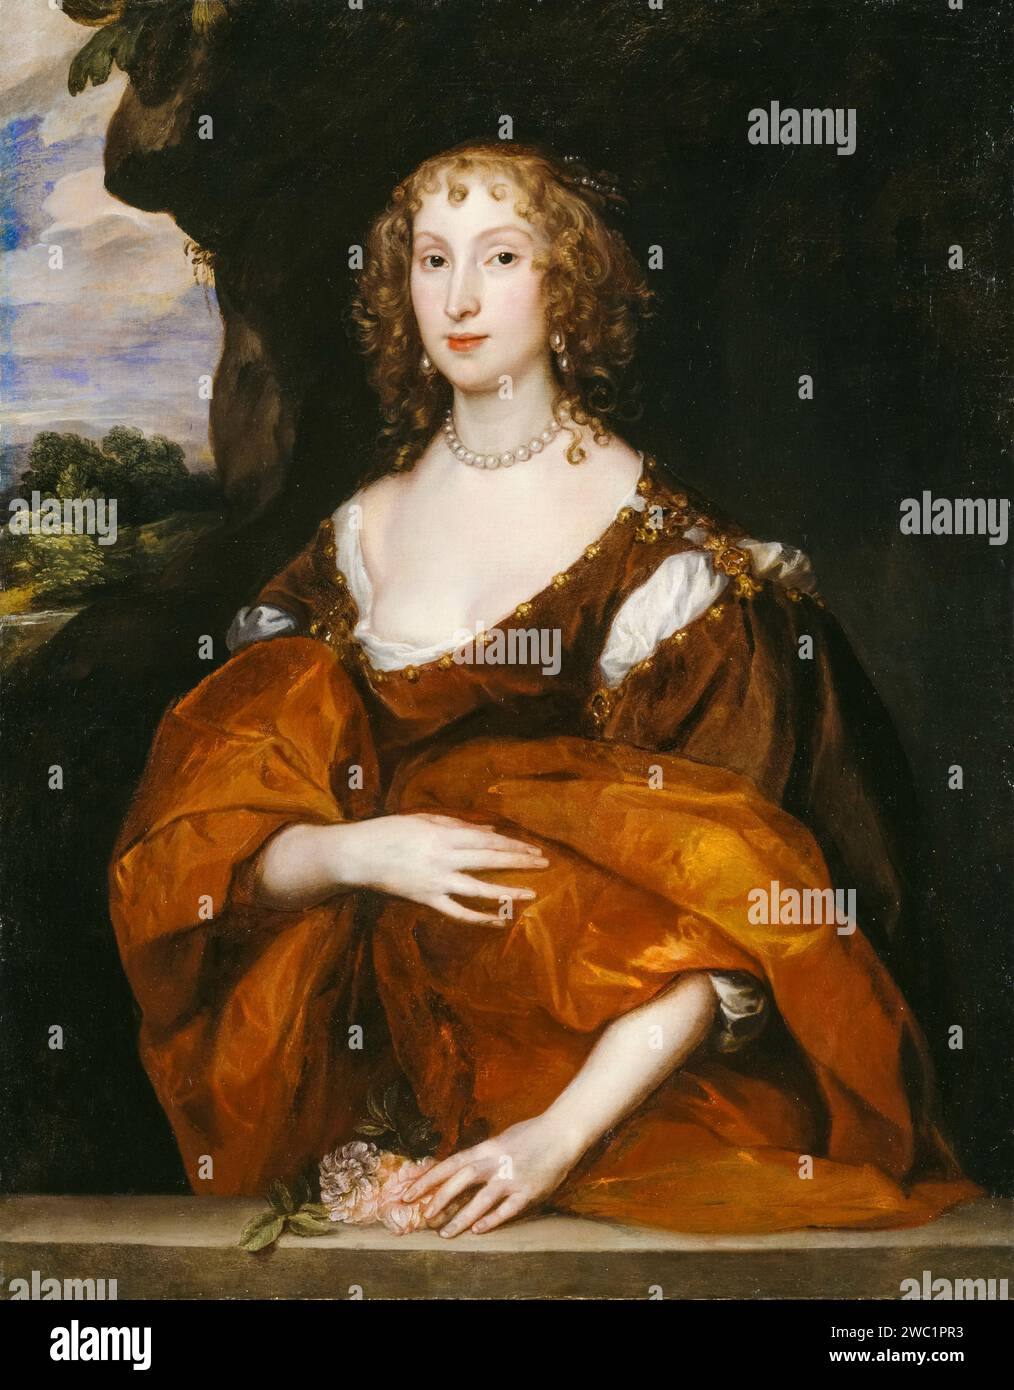 Mary Hill, Lady Killigrew, portrait à l'huile sur toile de Sir Anthony van Dyck, 1638 Banque D'Images